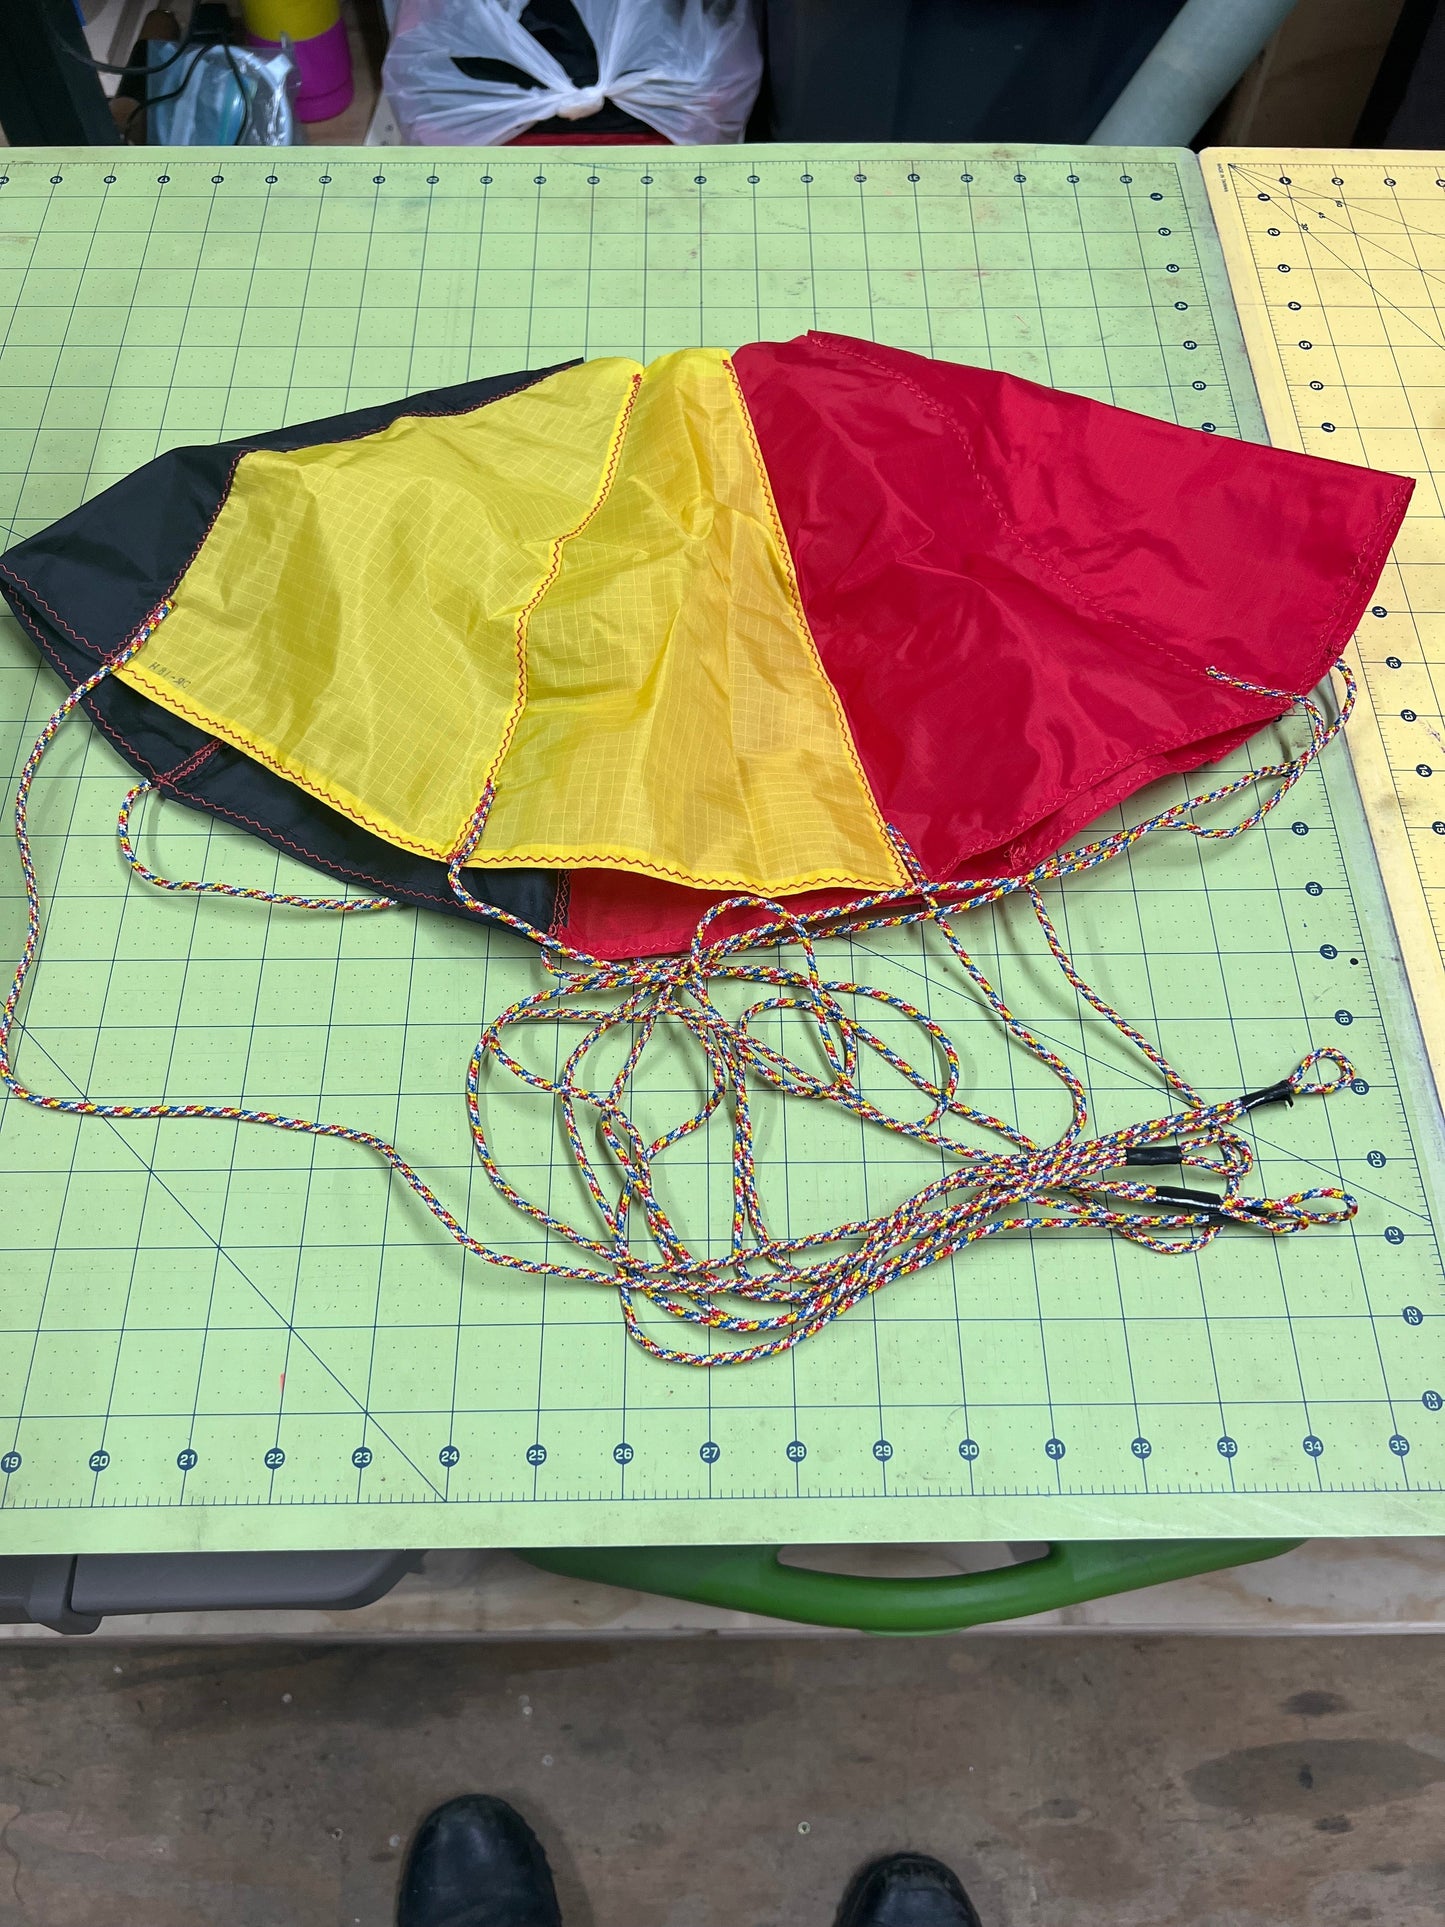 DR-H48 Hemispherical Parachute